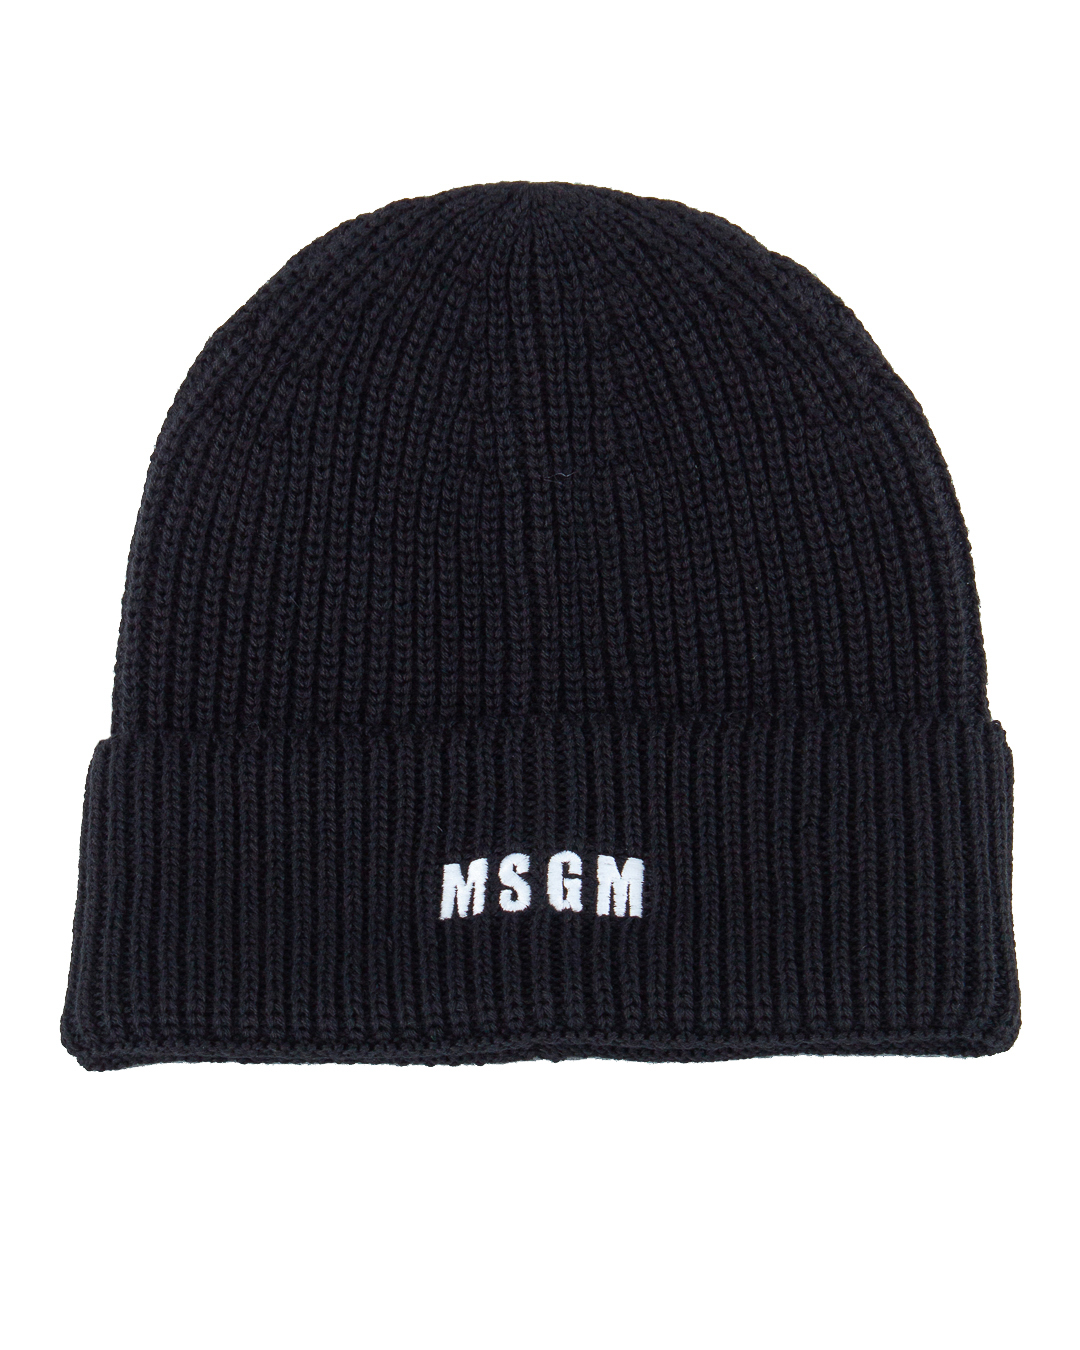 шапка MSGM 3541MDL08 черный UNI, размер UNI - фото 1